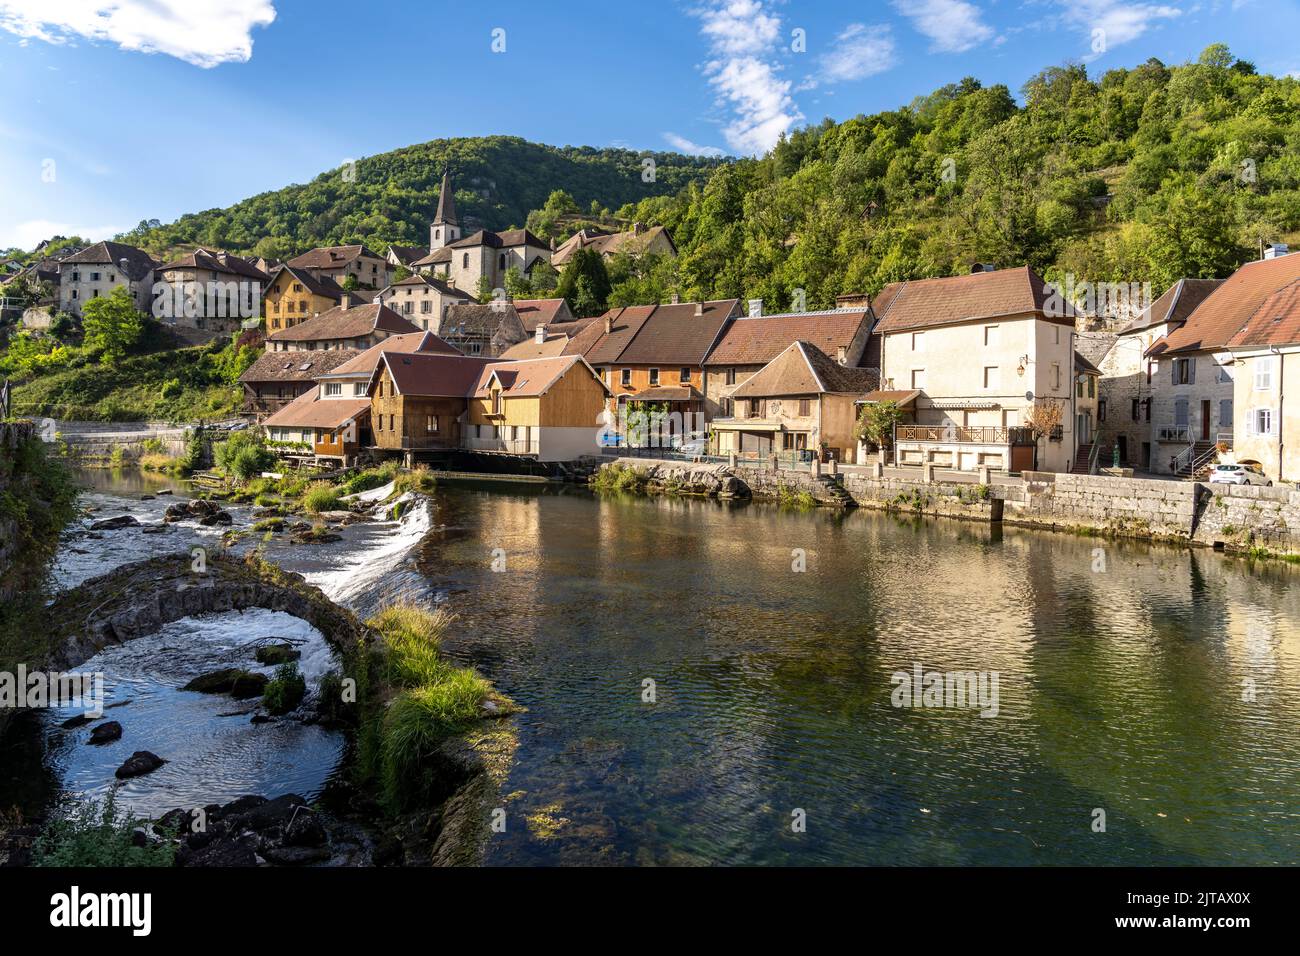 Das Dorf Lods und der Fluss Loue, Bourgogne-Franche-Comté, Frankreich, Europa |   Lods village and the Loue river, Bourgogne-Franche-Comté, France, Eu Stock Photo